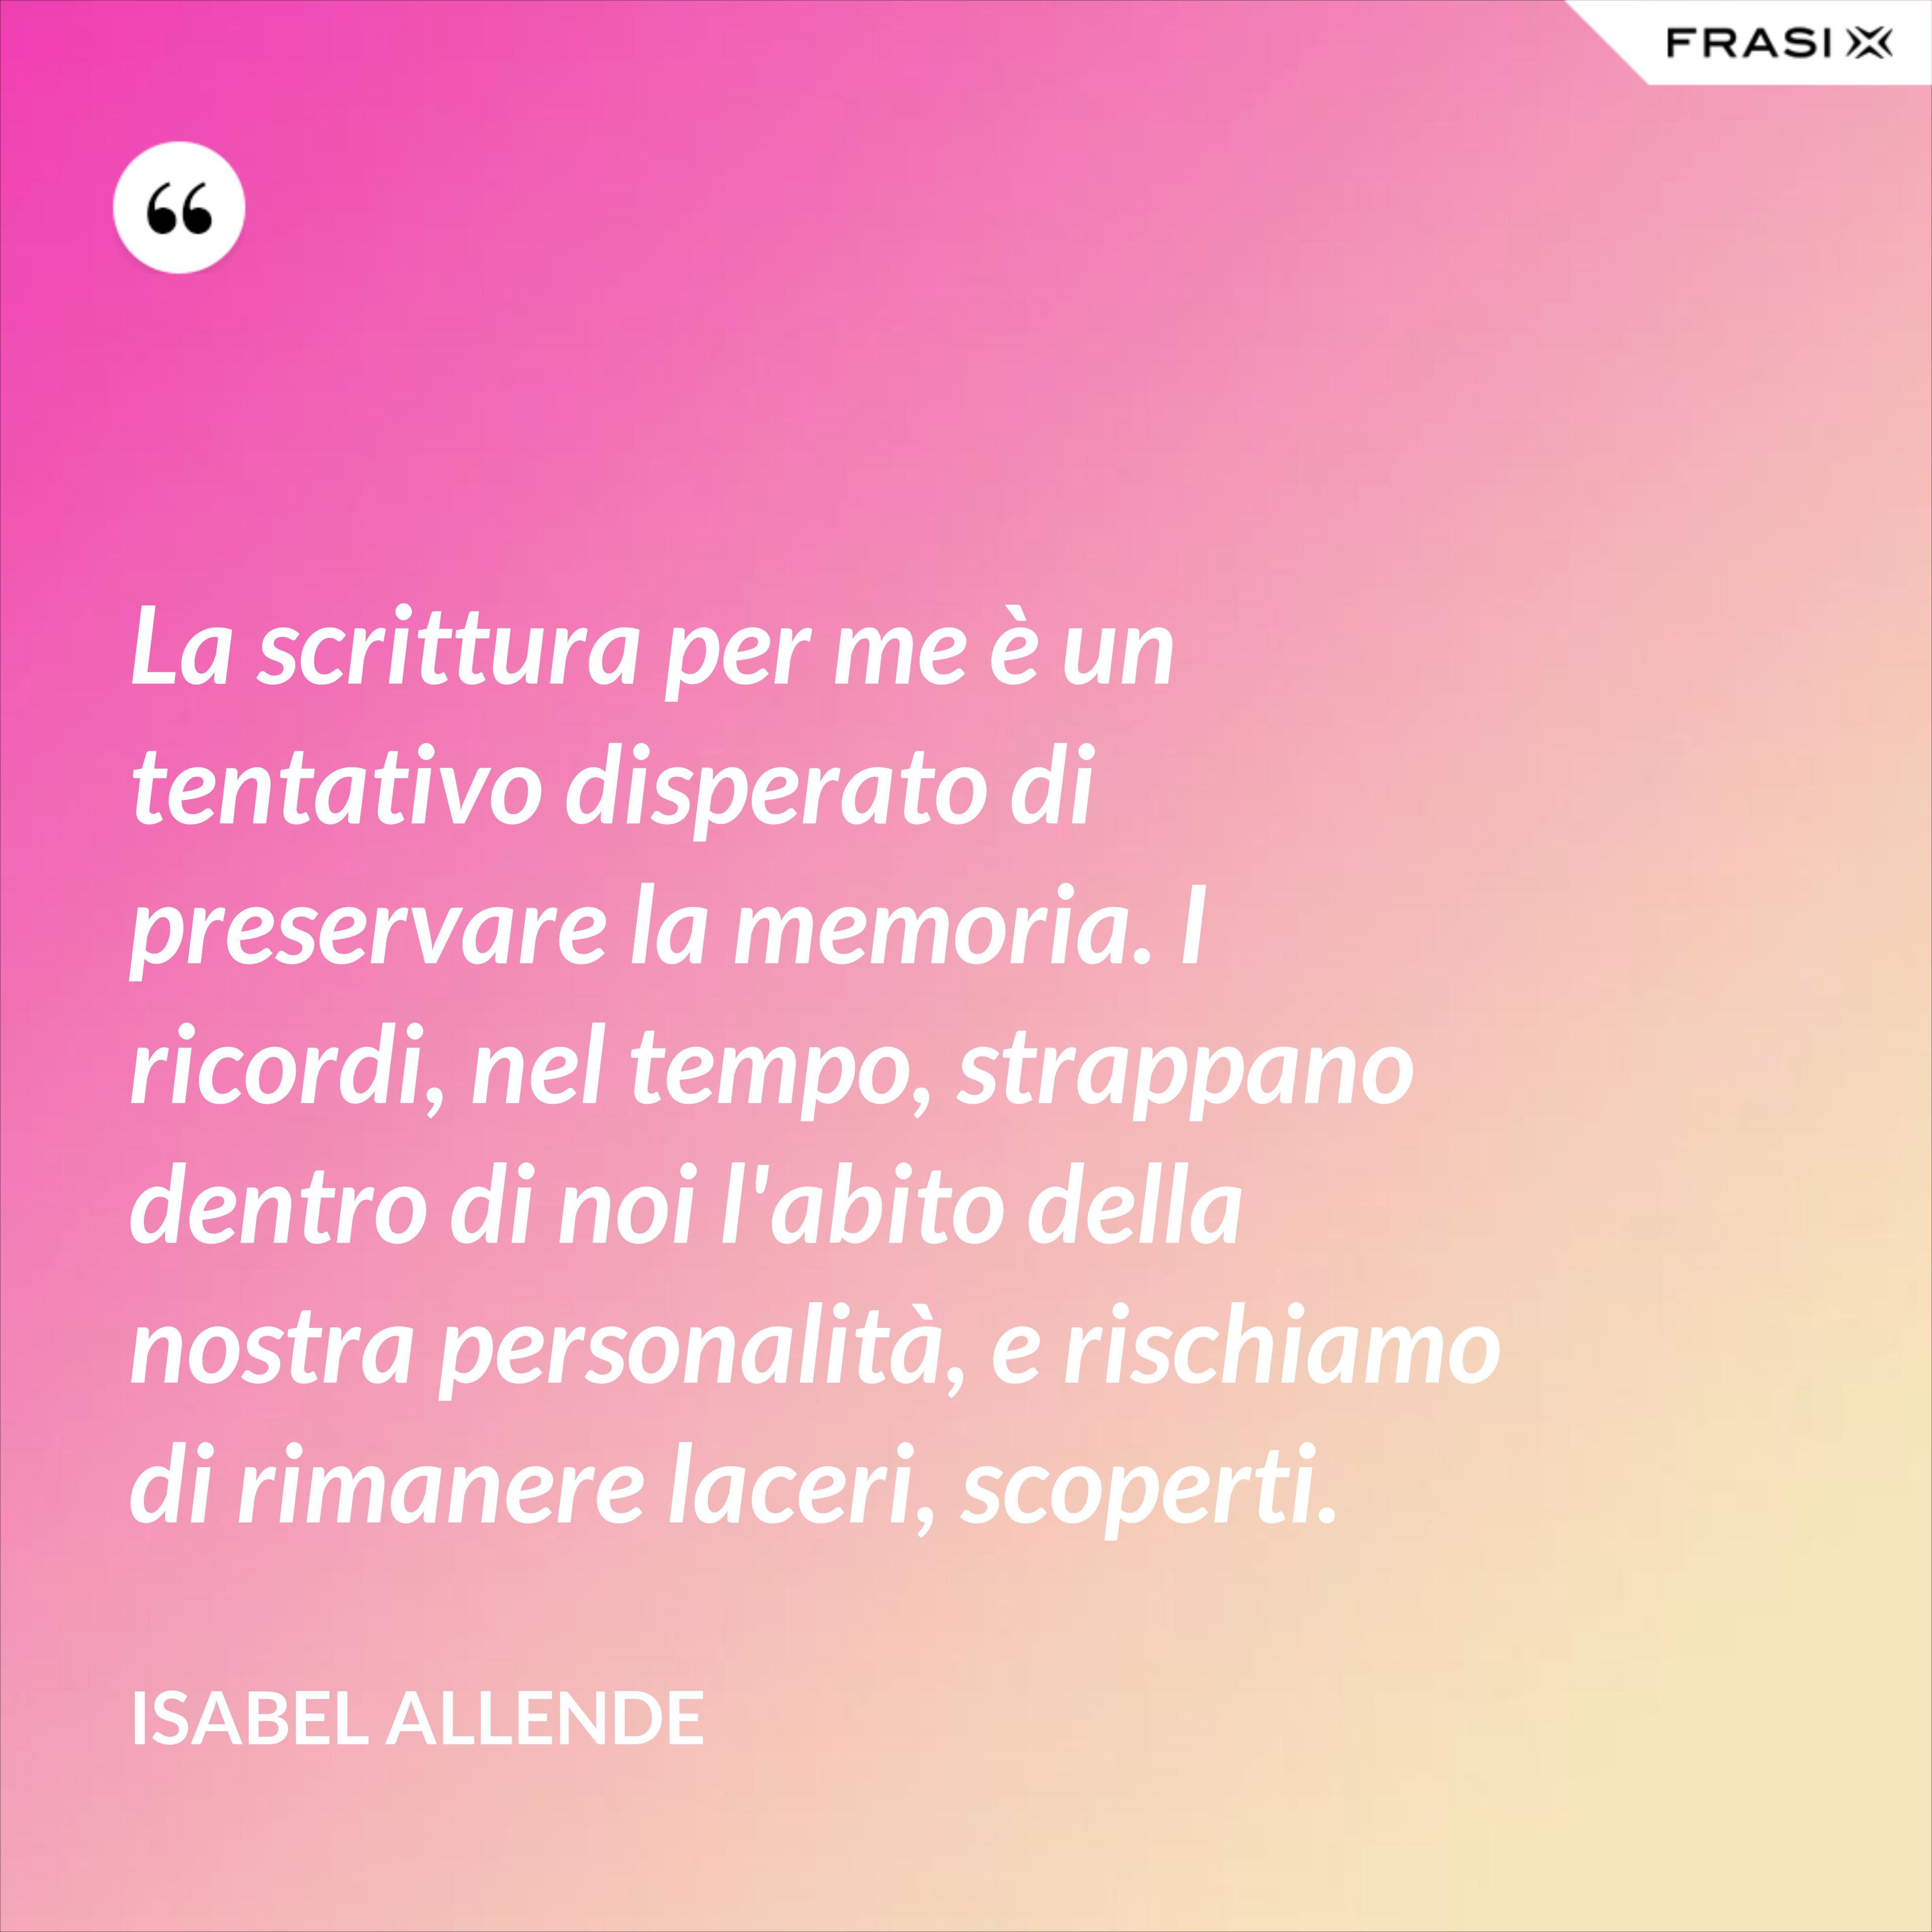 La scrittura per me è un tentativo disperato di preservare la memoria. I ricordi, nel tempo, strappano dentro di noi l'abito della nostra personalità, e rischiamo di rimanere laceri, scoperti. - Isabel Allende